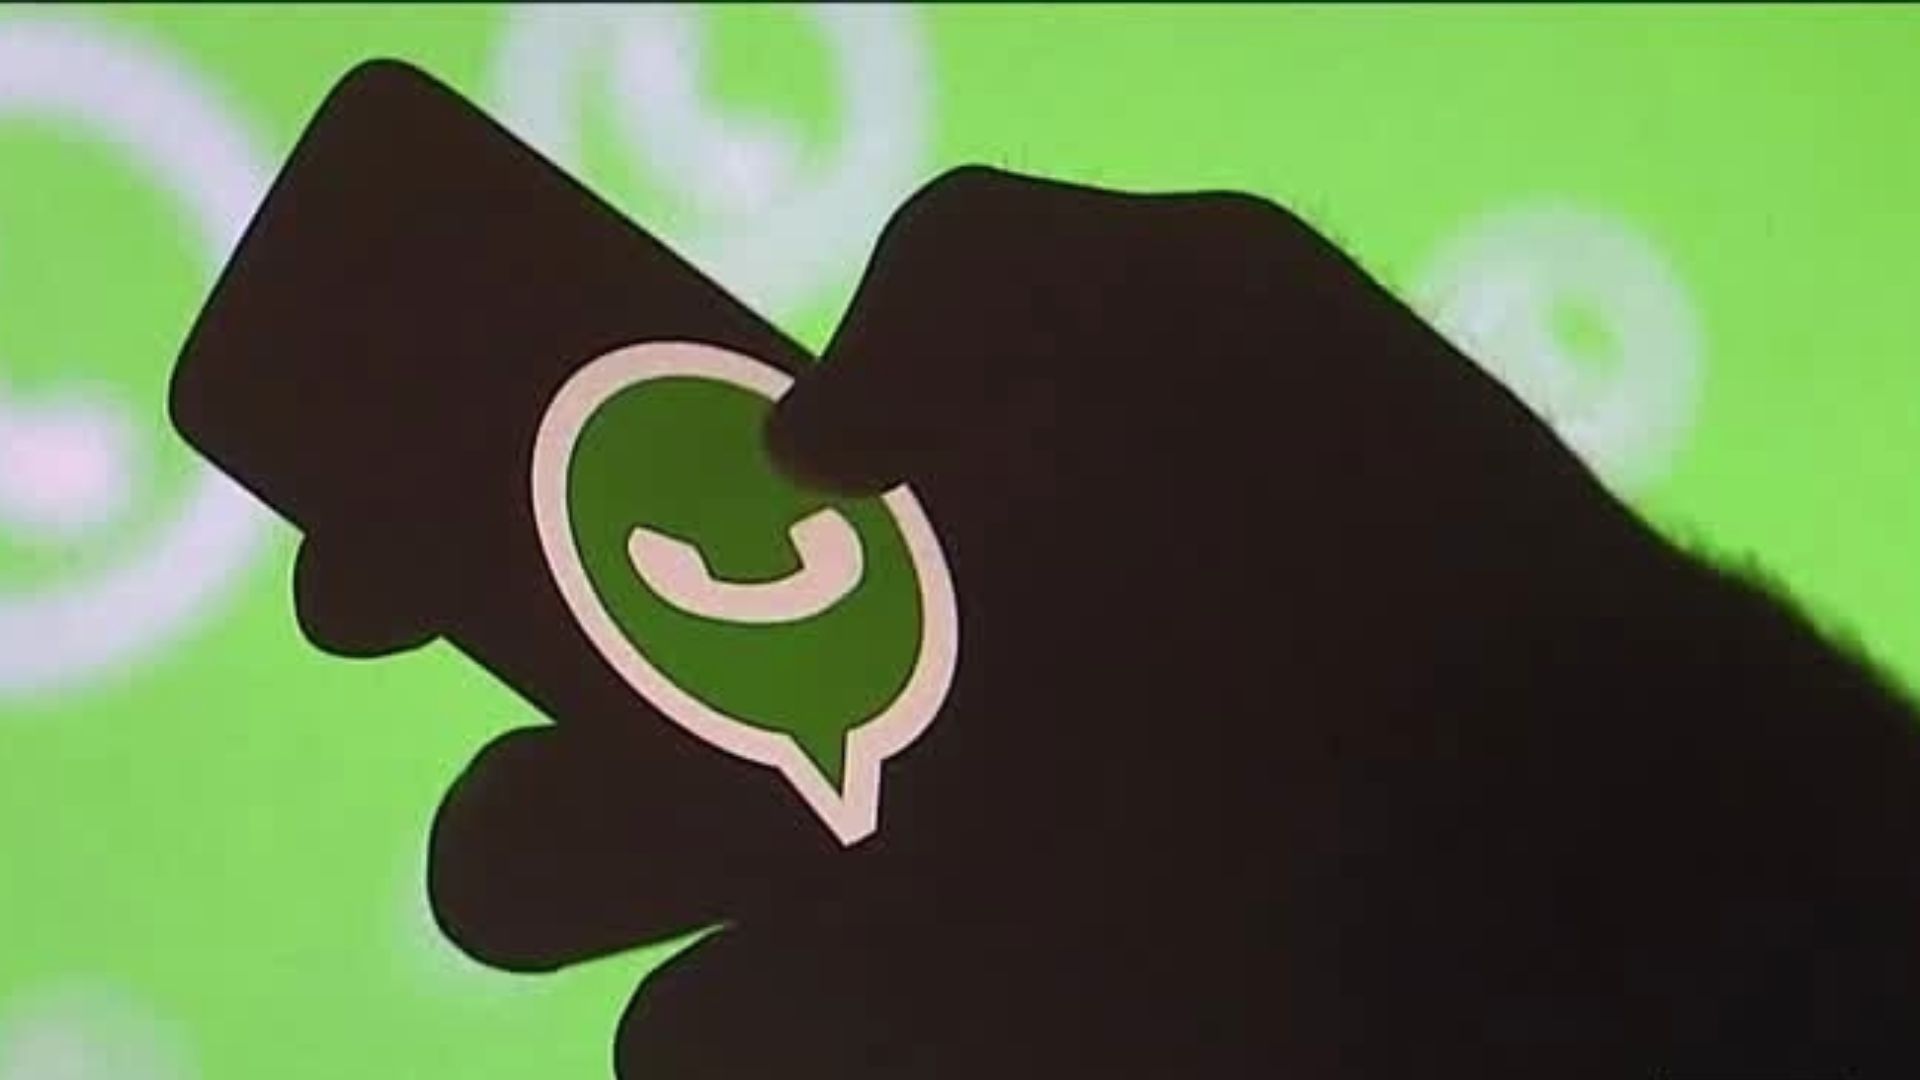 WhatsApp dejará de funcionar en algunos celulares en el 2023